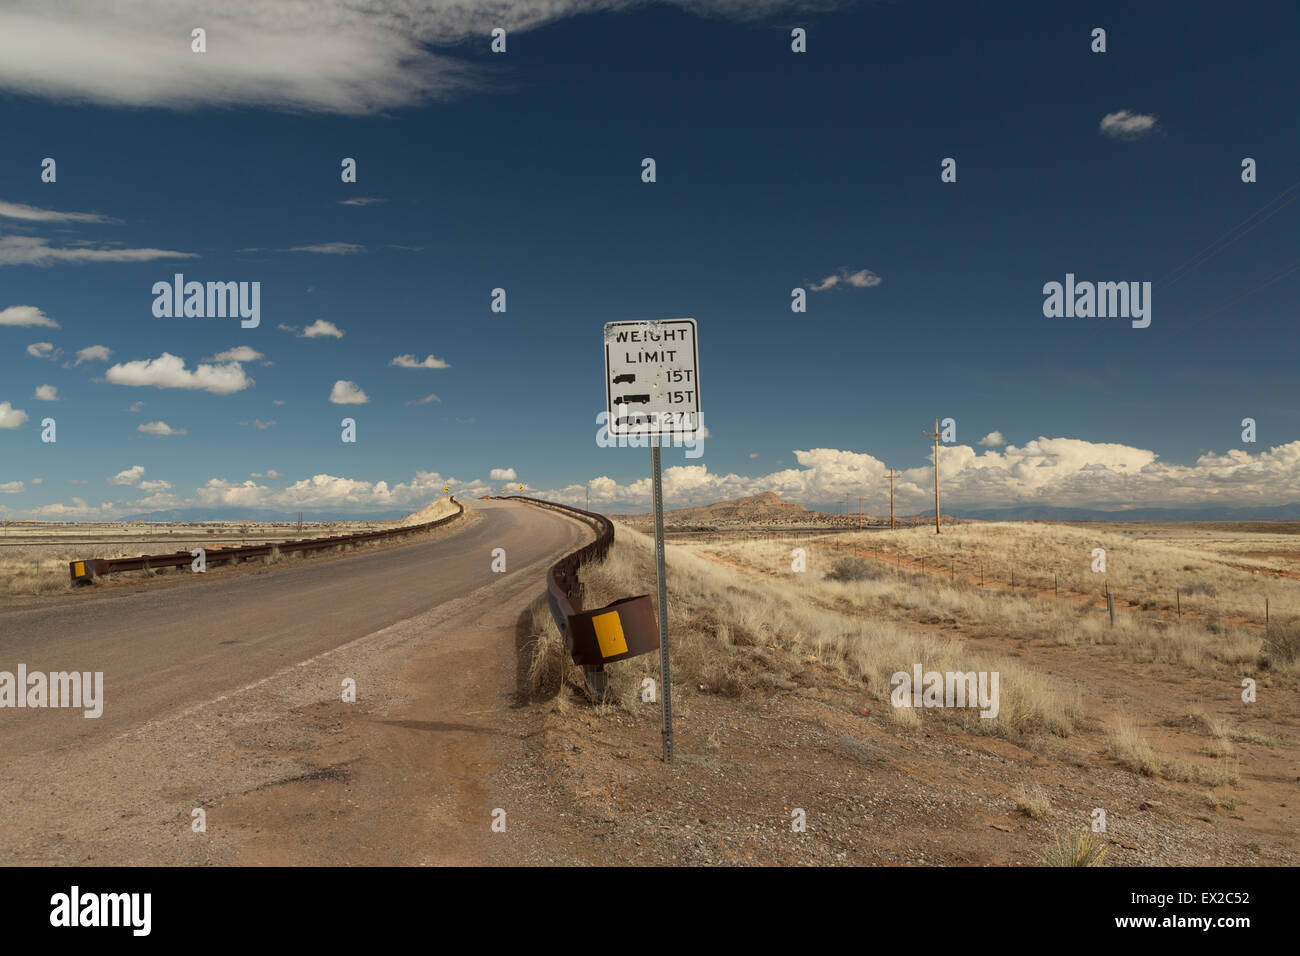 Una fotografía de la entrada a un puente curvo en el desierto de Nuevo México, EE.UU.. Límite de Peso de un "signo" está en primer plano. Foto de stock